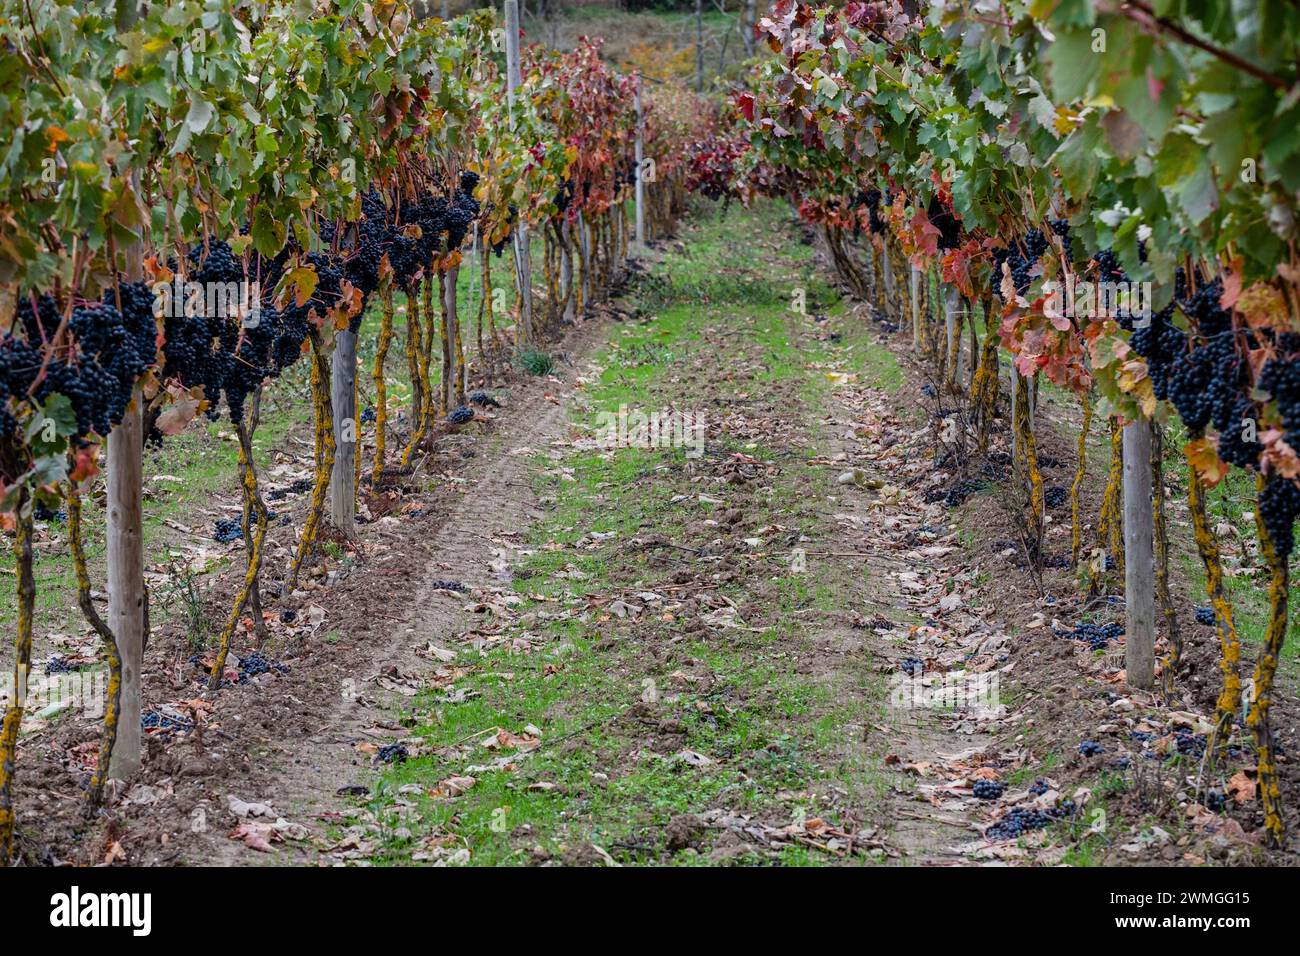 Autumnal vines near Cubillo de Ebro, Valderredible, Cantabria, Spain Stock Photo